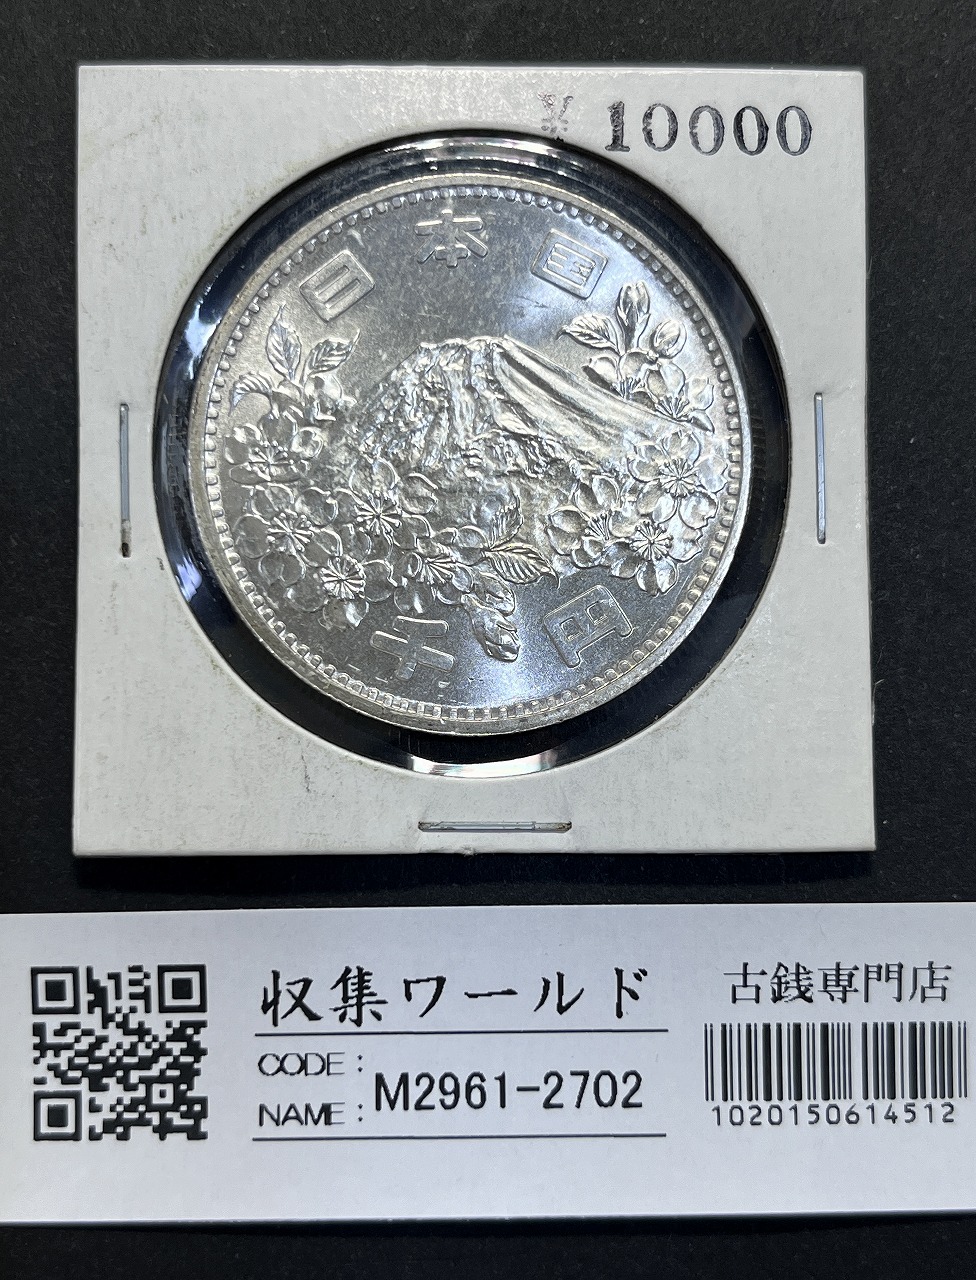 東京オリンピック記念 1964年(S39) 1000円銀貨 完全未使用-2702